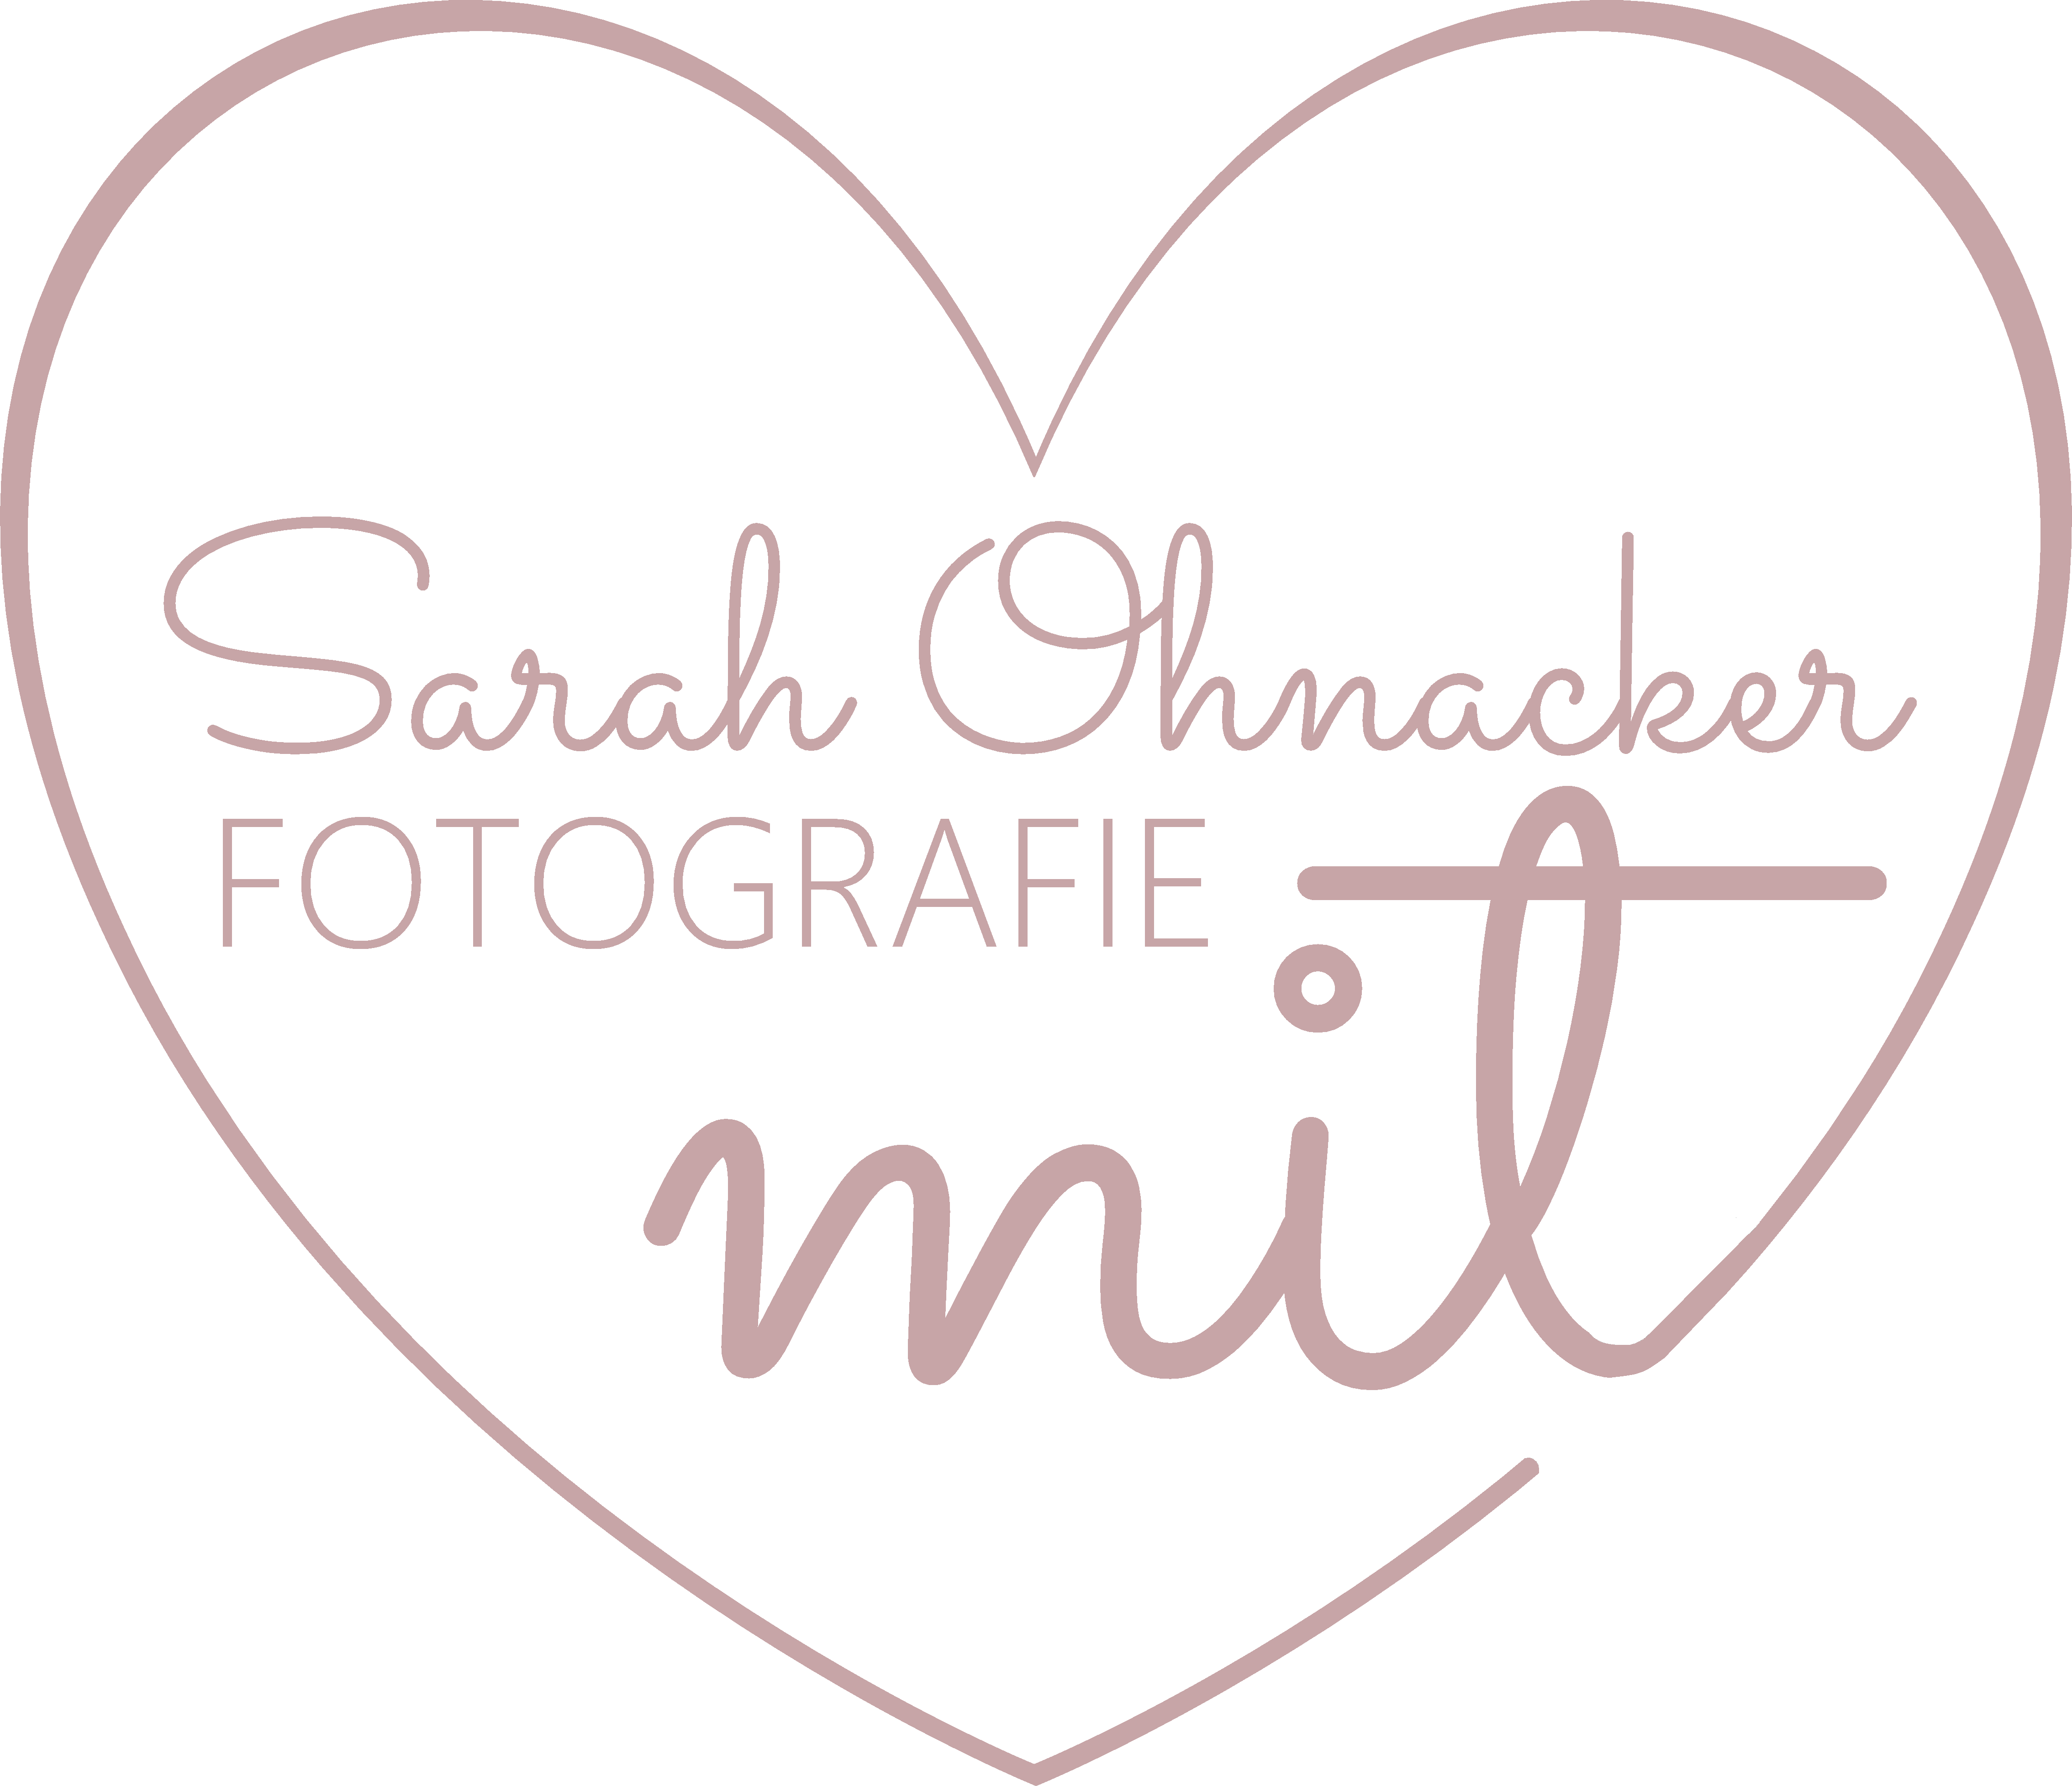 Sarah Ohnacker mit Herz Fotografie